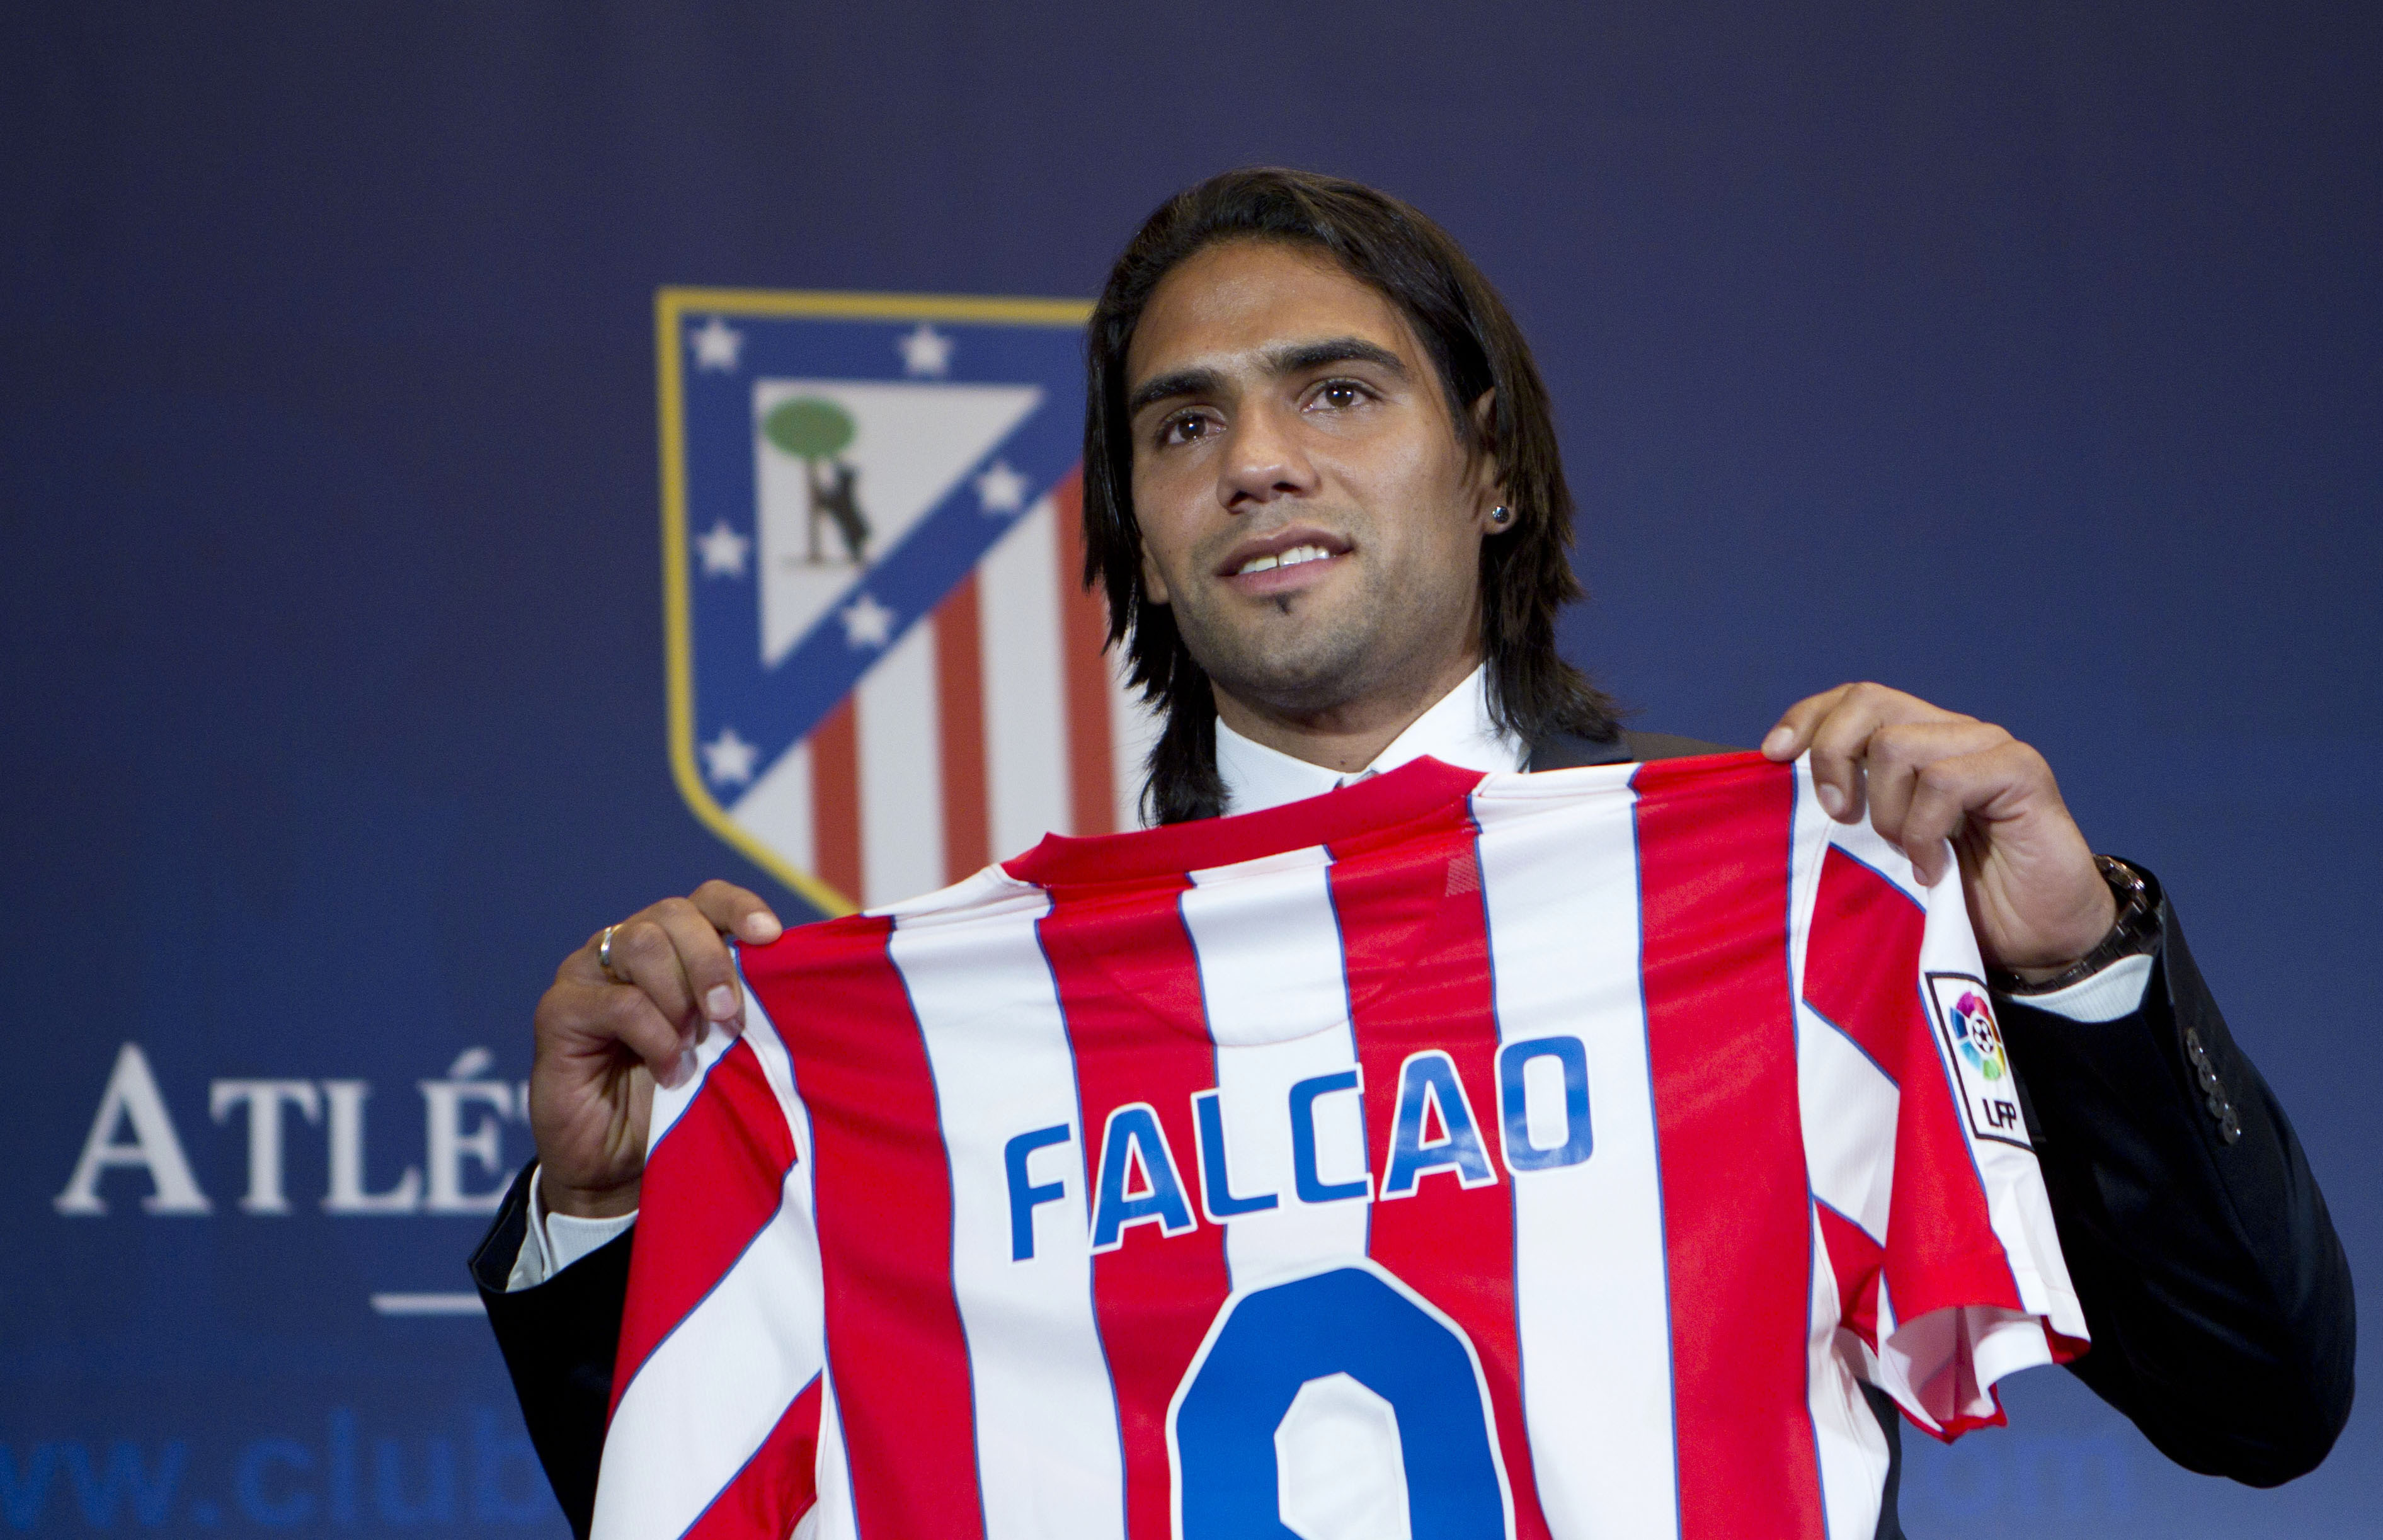 Kostar man 40 miljoner Euro får man en del press på sig. Kan Falcao frälsa Atlético?